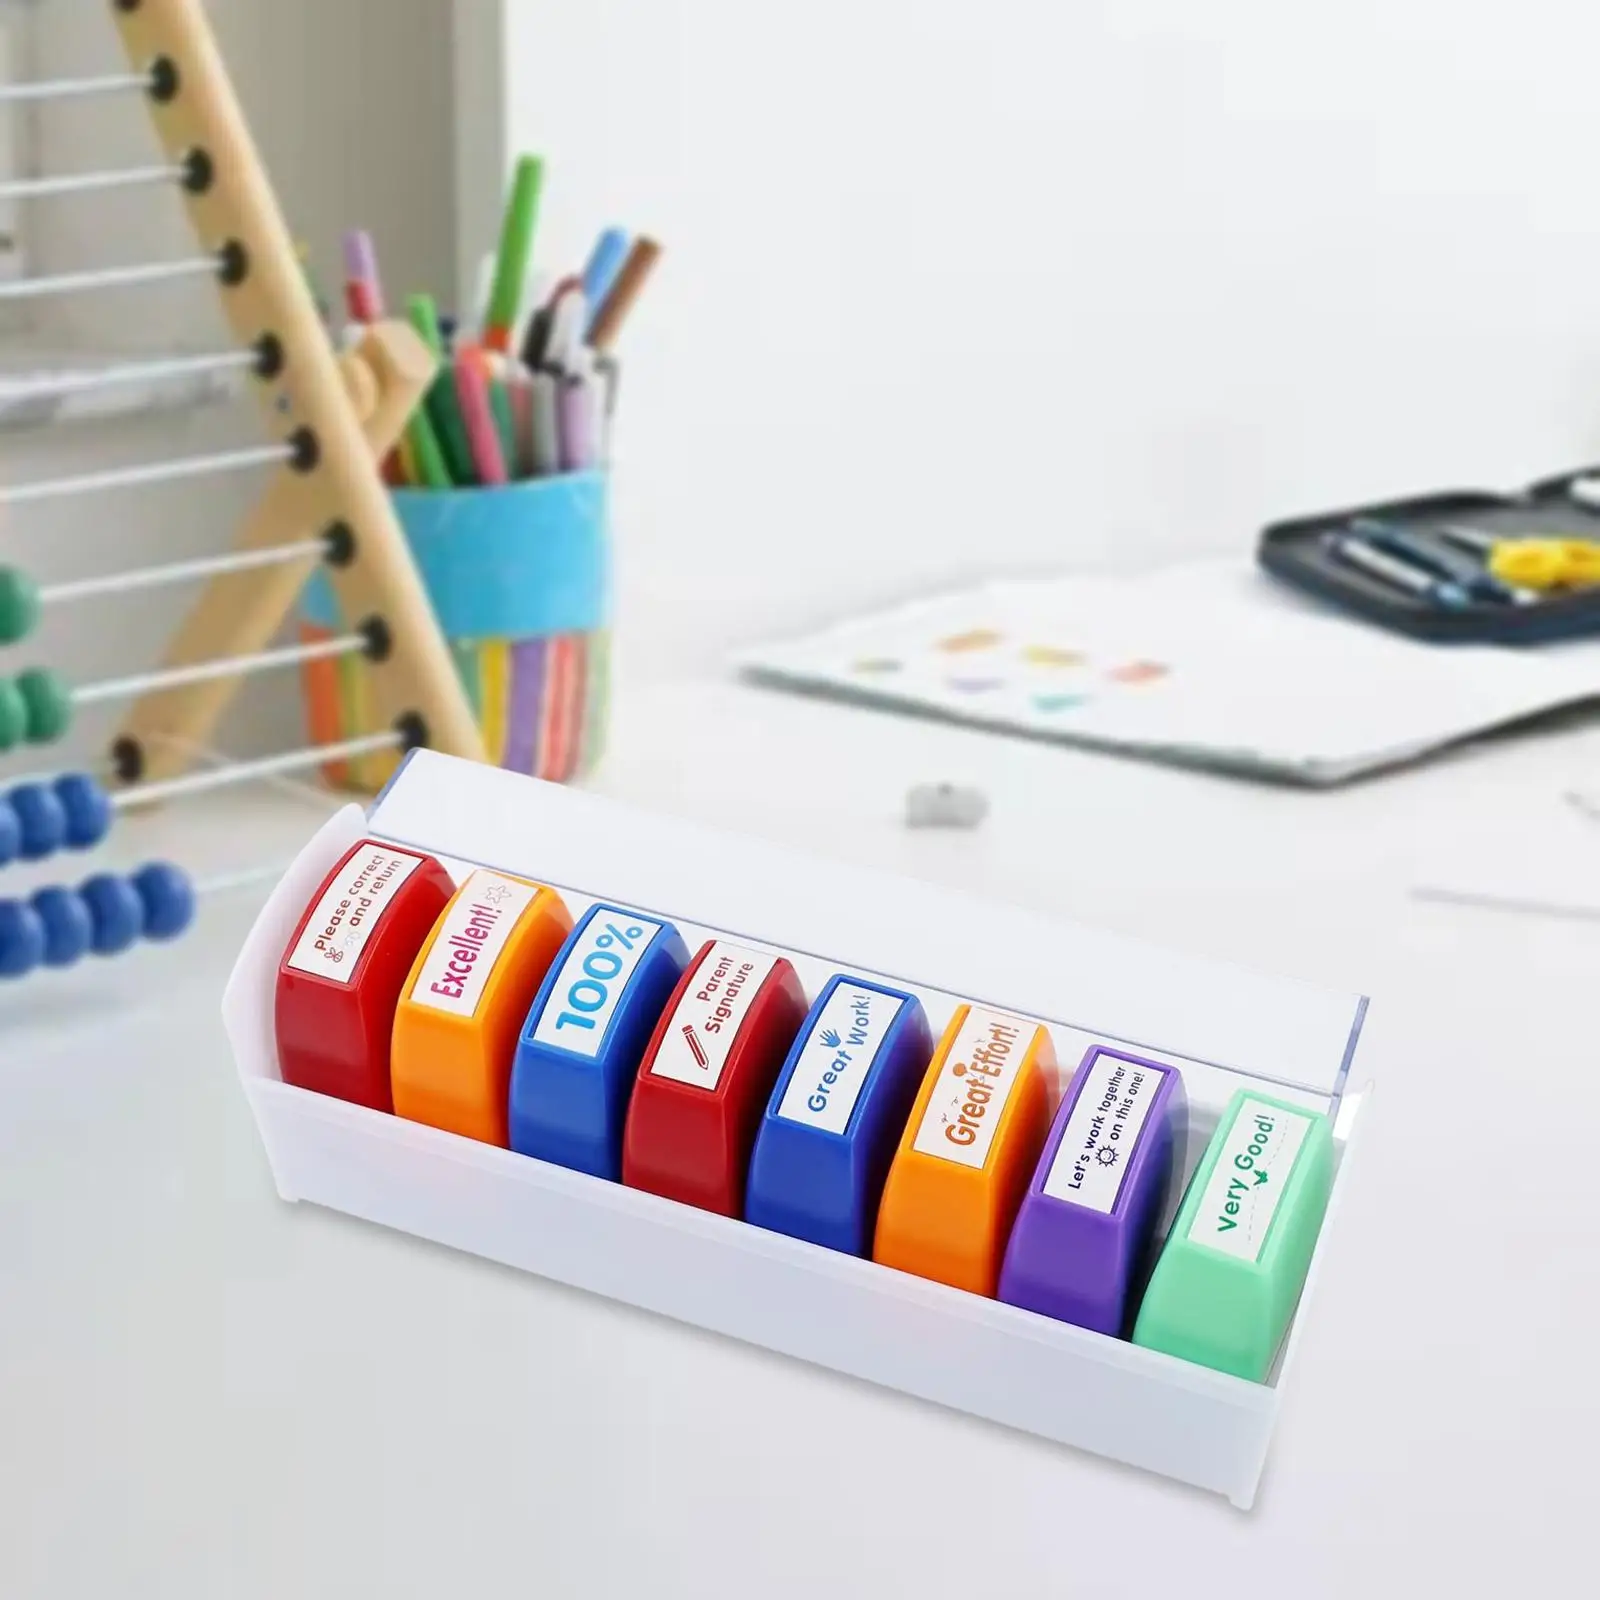 8 Pieces Teacher Stamps Set Motivational Parent  Colorful Set for Classroom Reward Grading School Encouragement